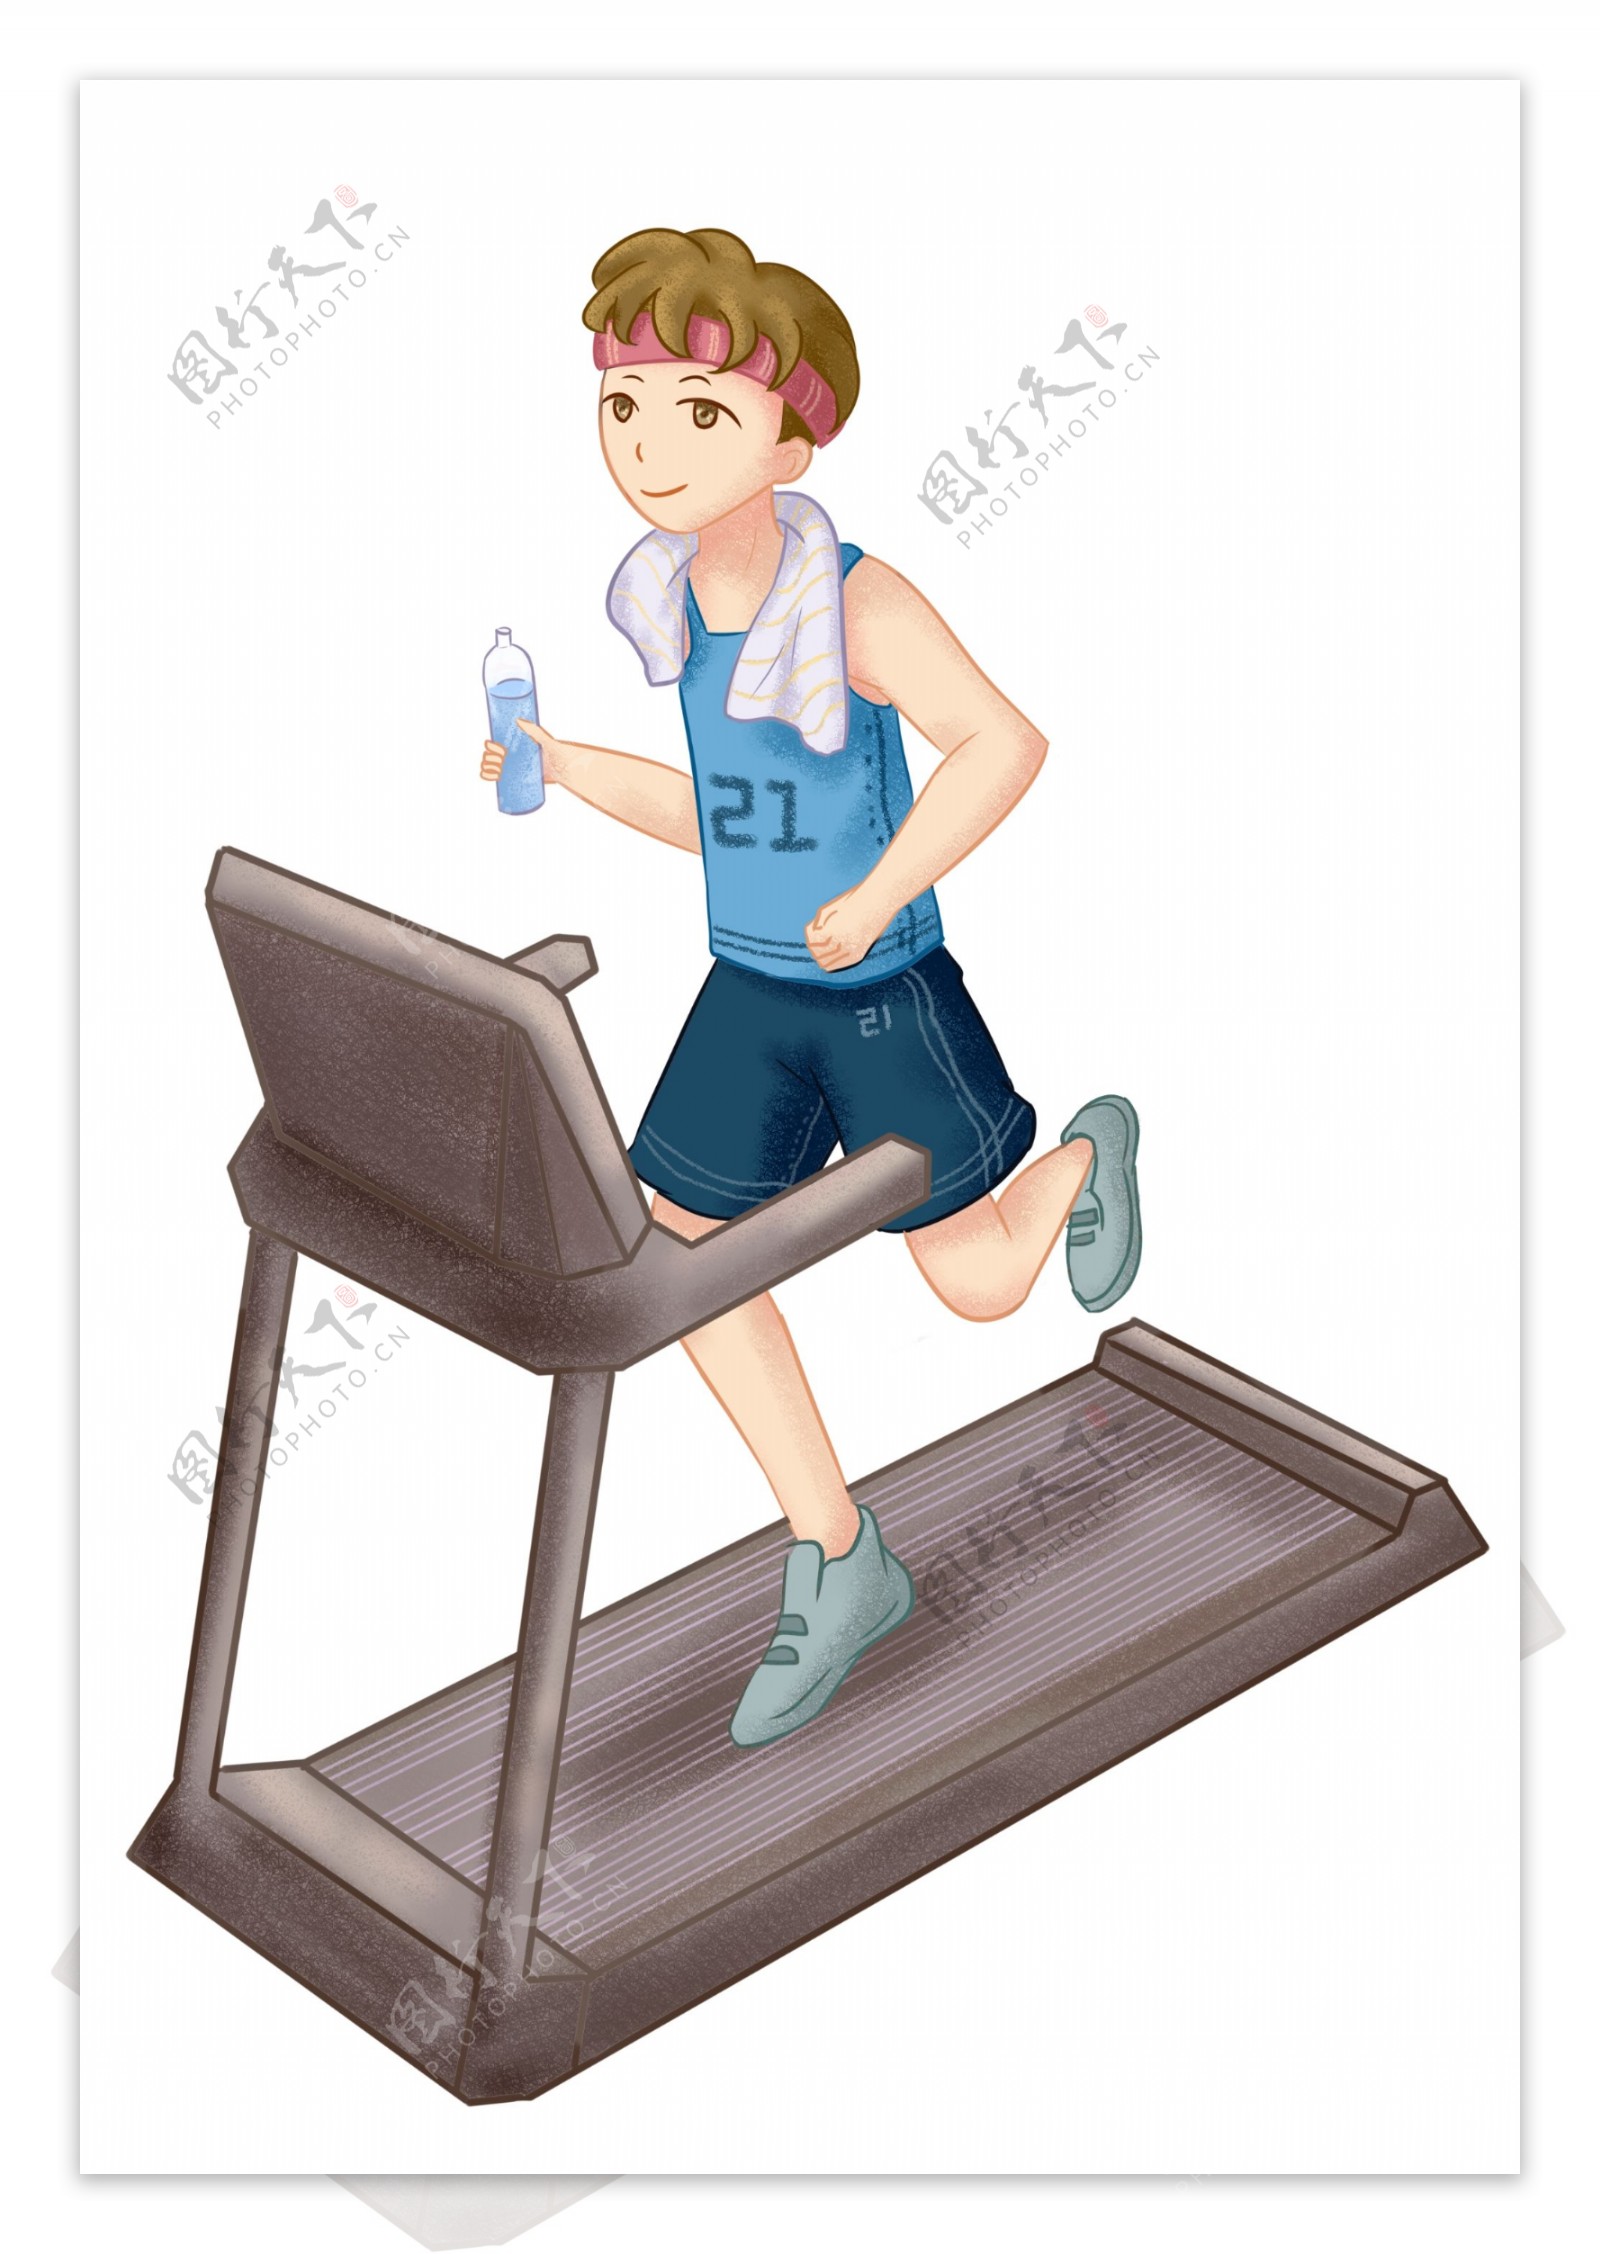 跑步机健身男孩插画